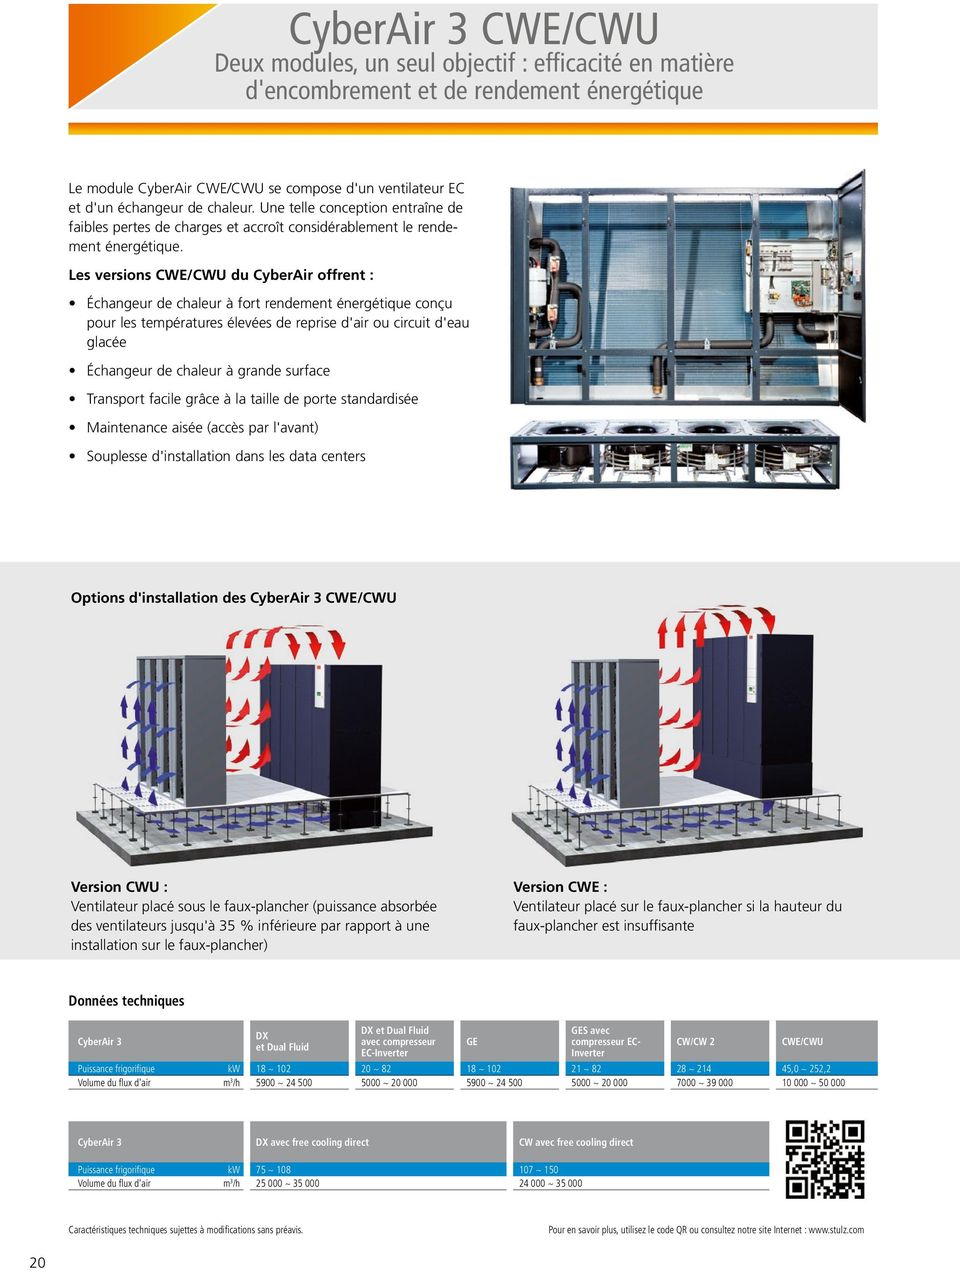 Les versions CWE/CWU du CyberAir offrent : Échangeur de chaleur à fort rendement énergétique conçu pour les températures élevées de reprise d'air ou circuit d'eau glacée Échangeur de chaleur à grande